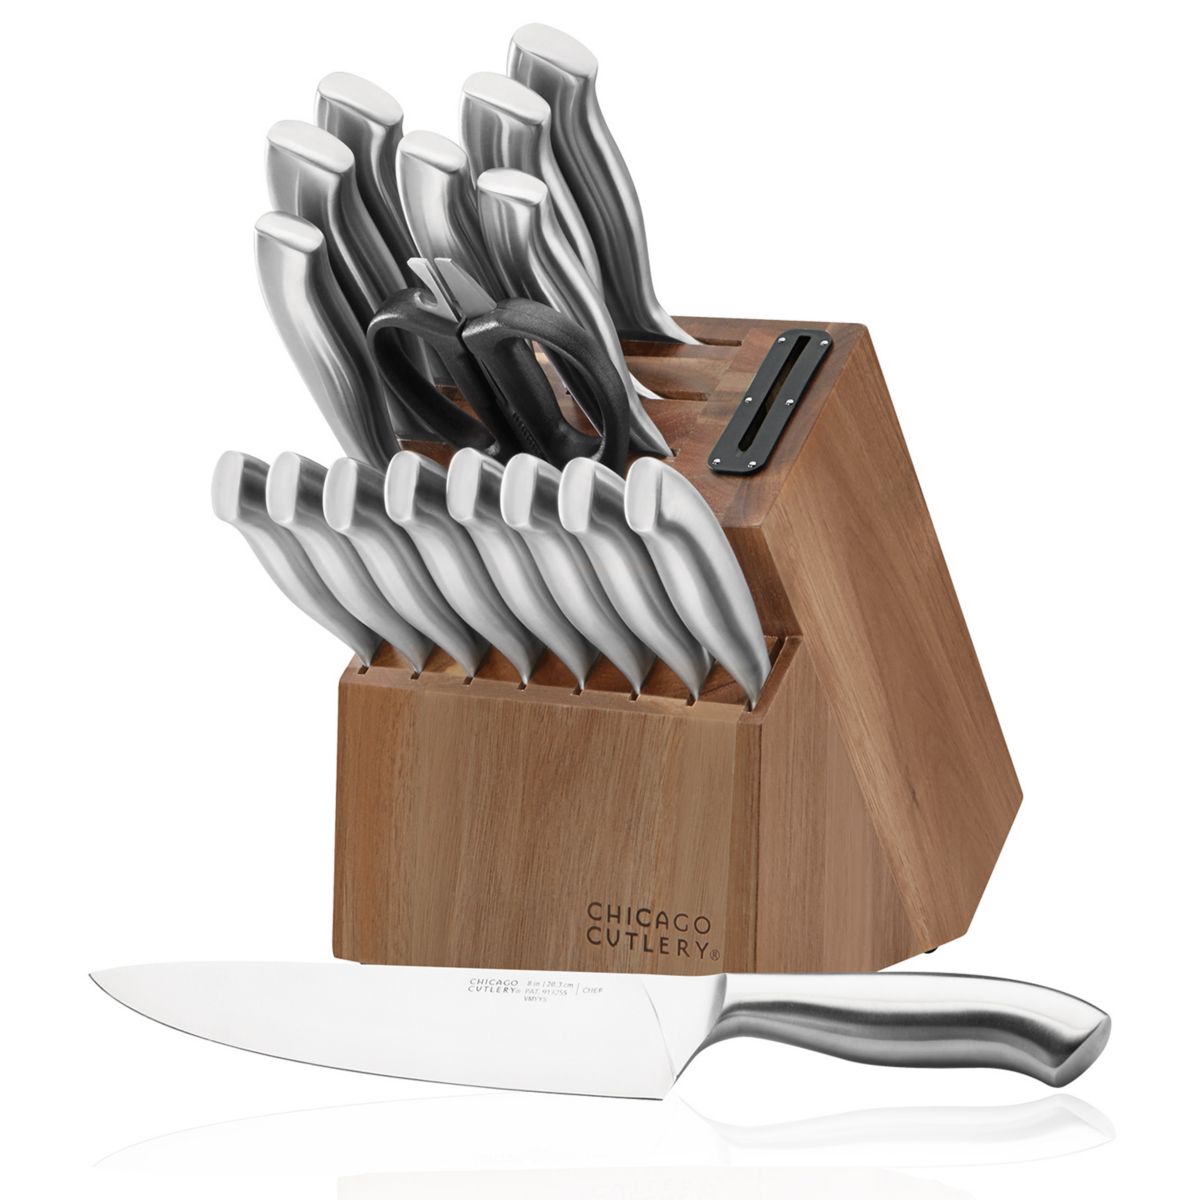 Chicago Cutlery Insignia, 18 предм. Набор блоков для ножей с направляющей рукояткой и встроенной точилкой Chicago Cutlery